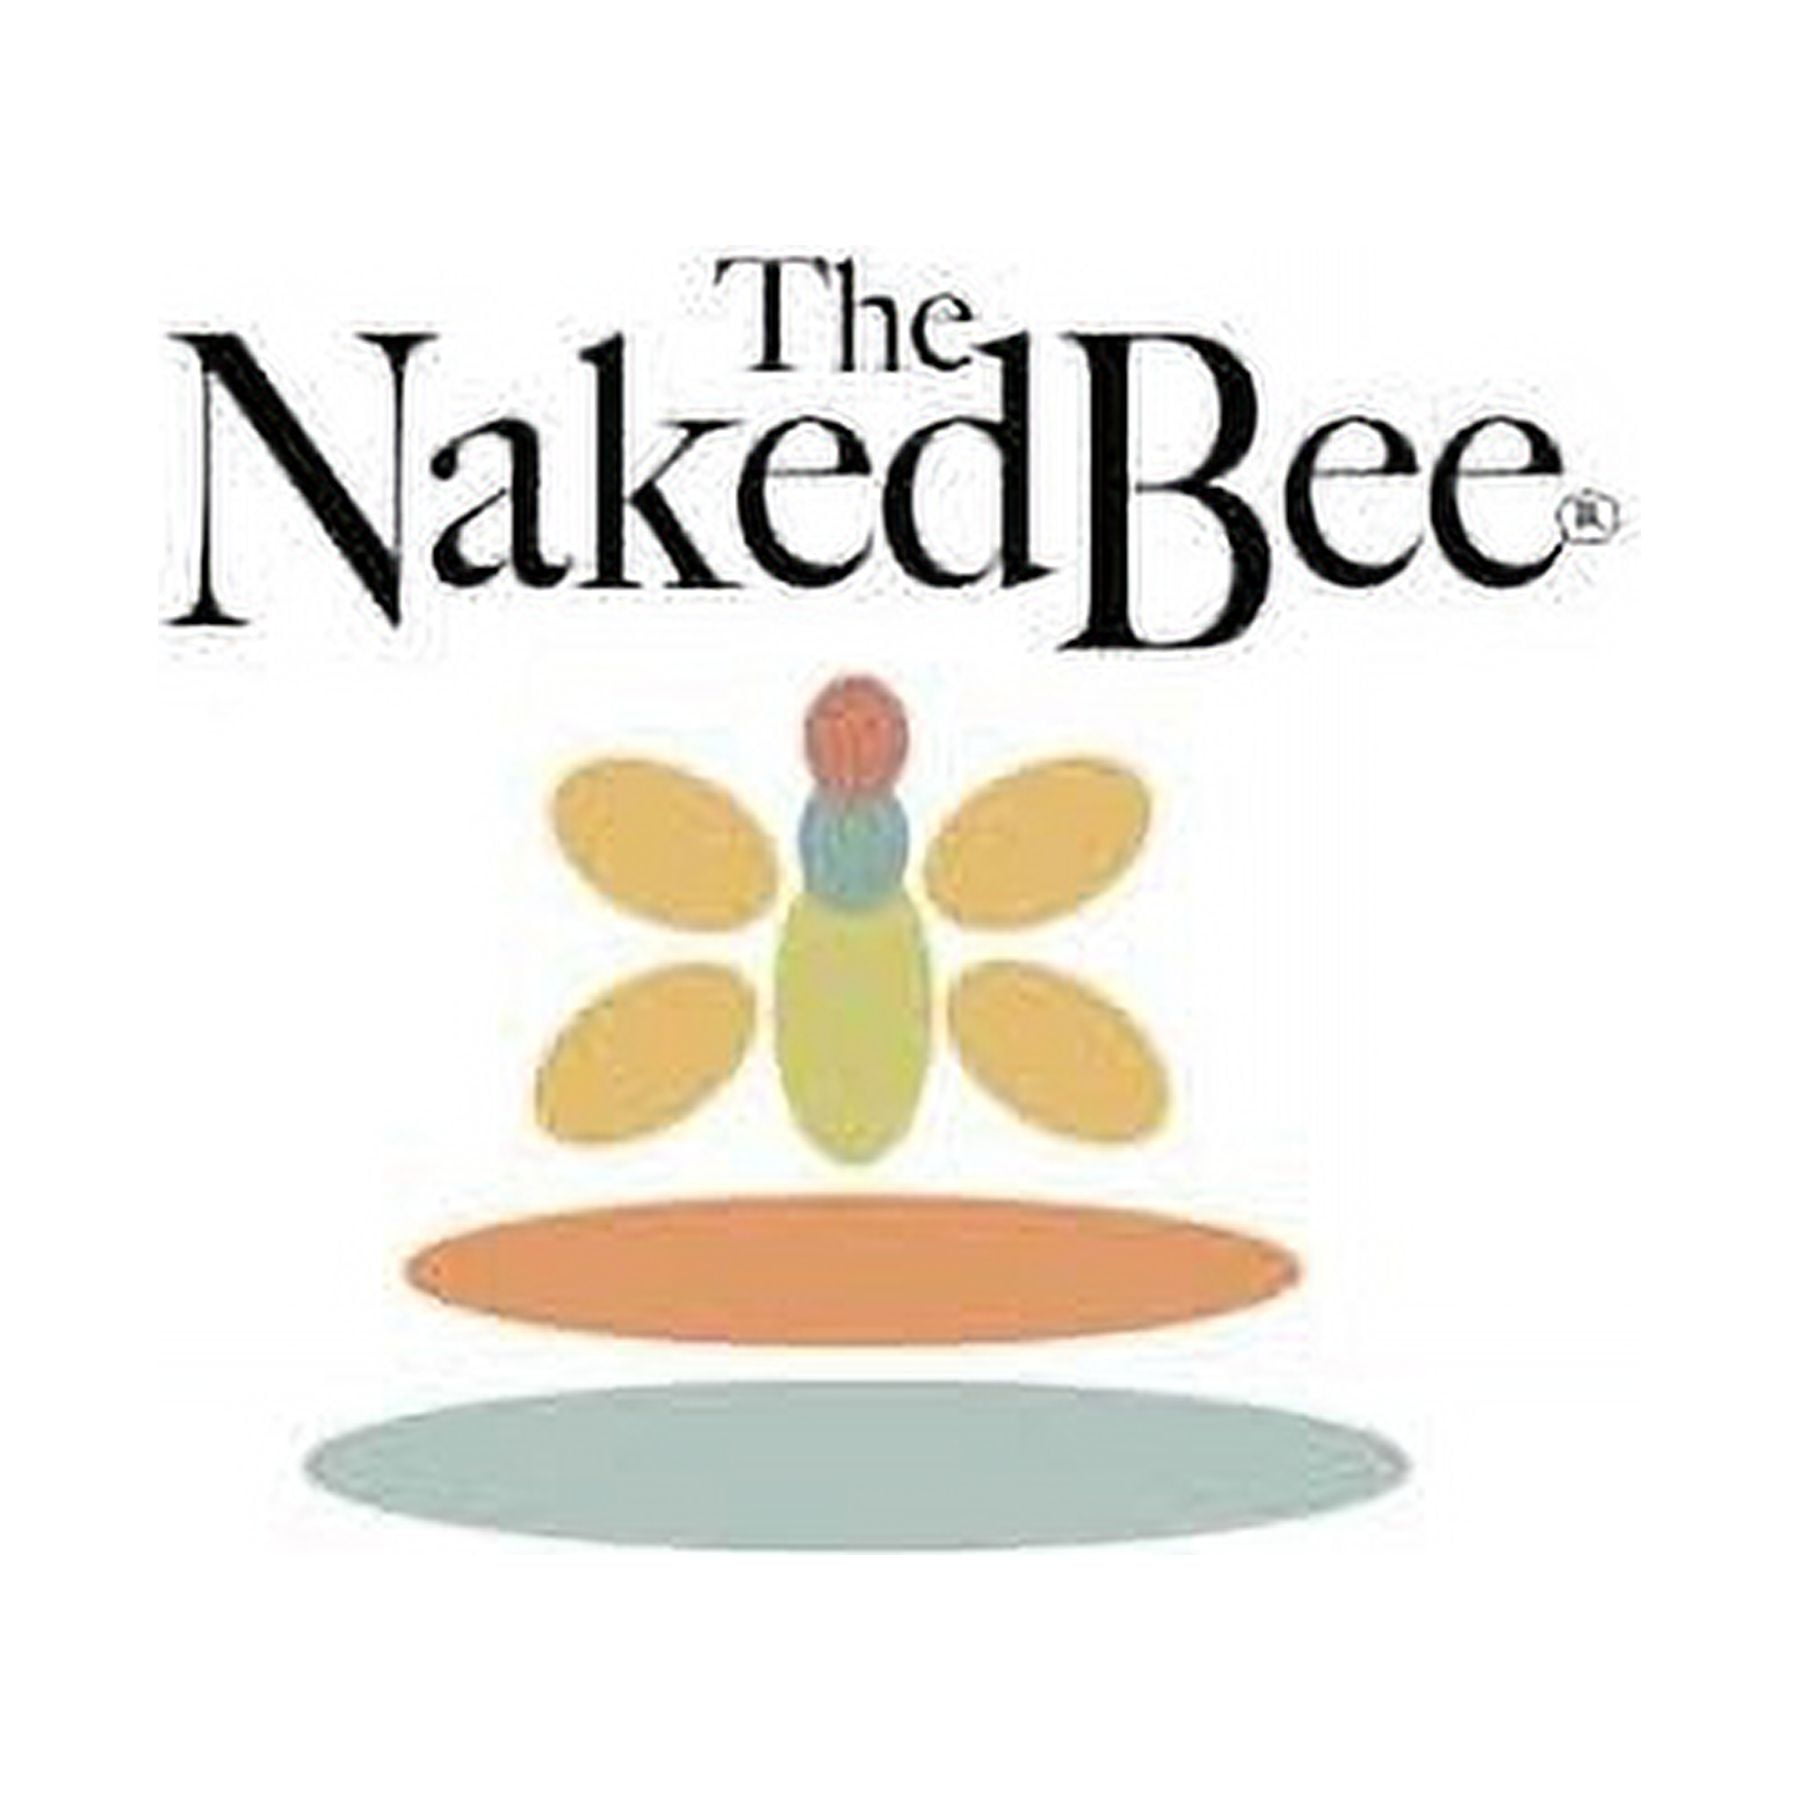 Naked Bee Nag Champa Lotion - Small